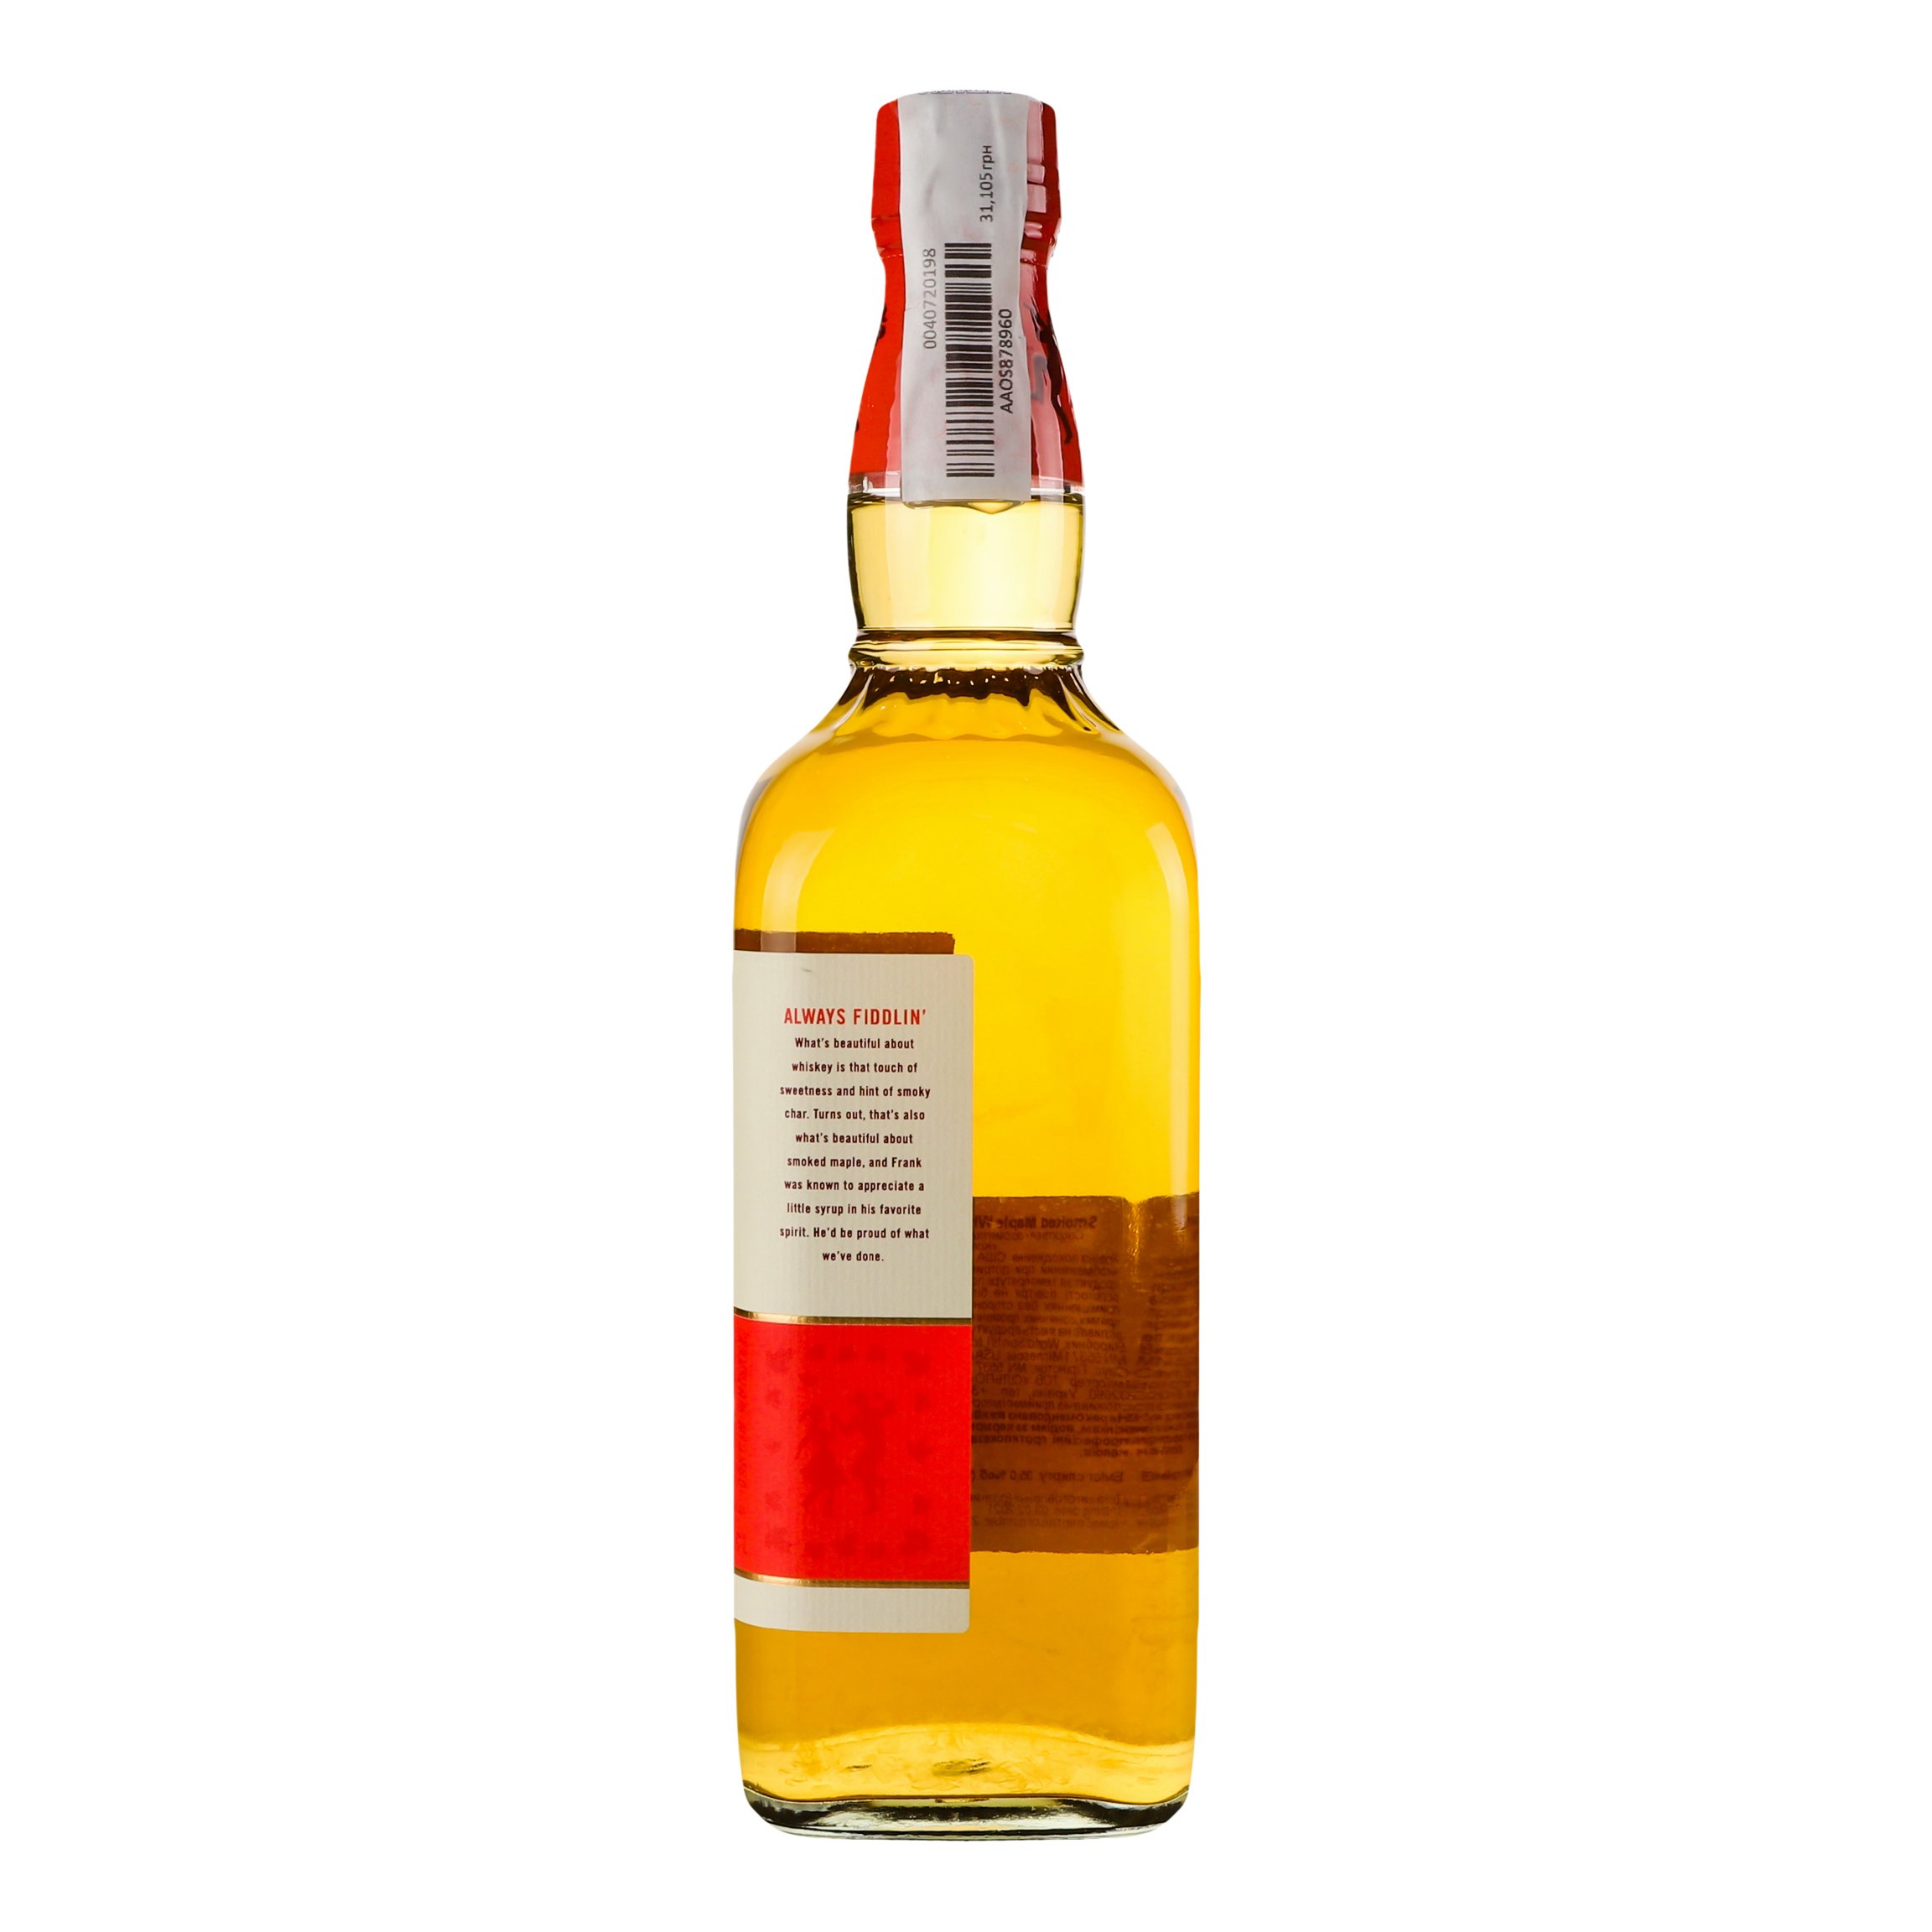 Напиток на основе виски Franks Fiddle Maple, 35%, 0,7 л (877632) - фото 3